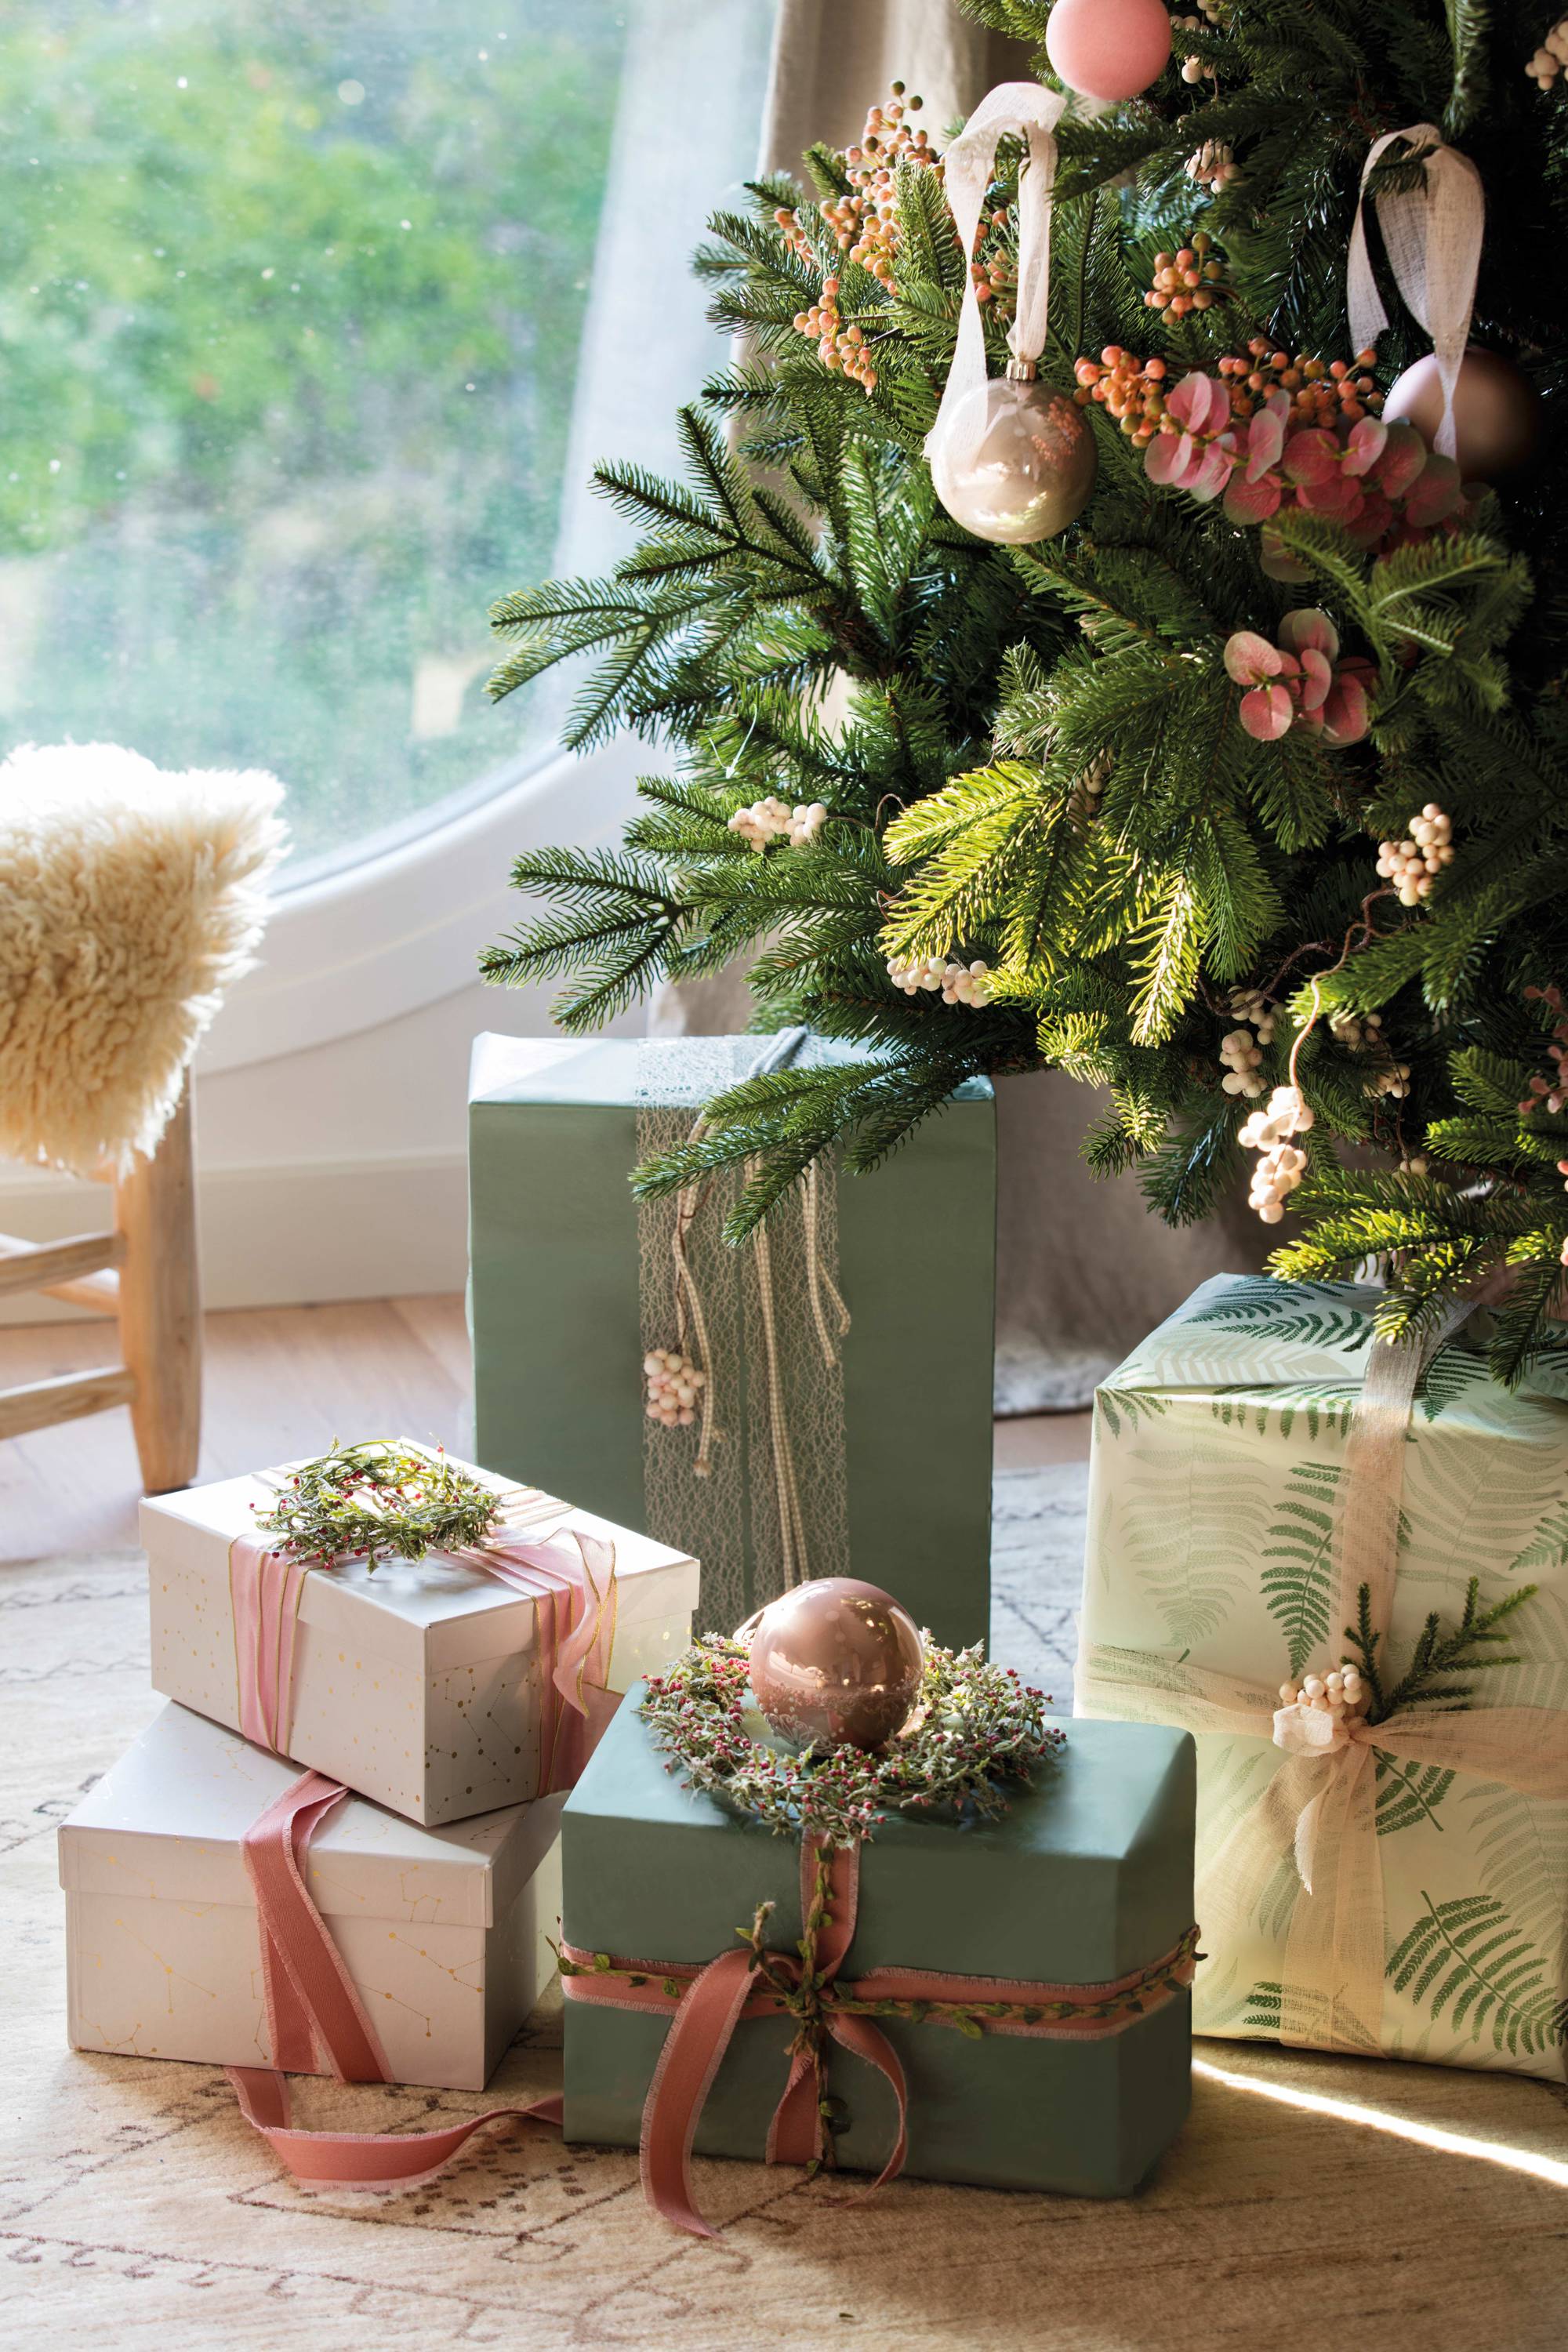 Regalos navideños sobre la alfombra, junto al árbol